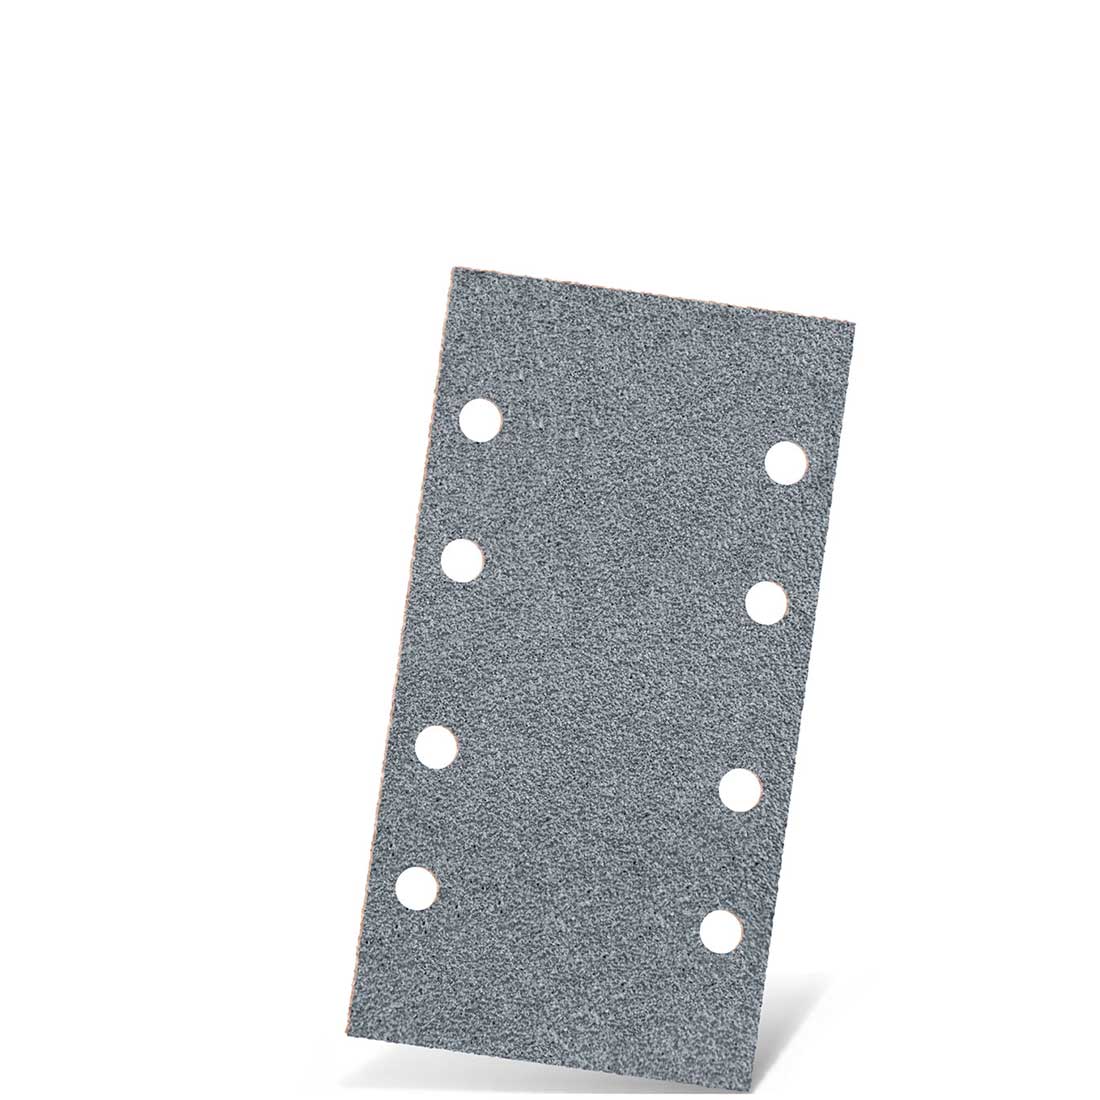 Carte abrasive velcrate MENZER per levigatrici orbitali, G40–400, 180 x 93 mm / 8 fori / corindone semi-friabile con stearato